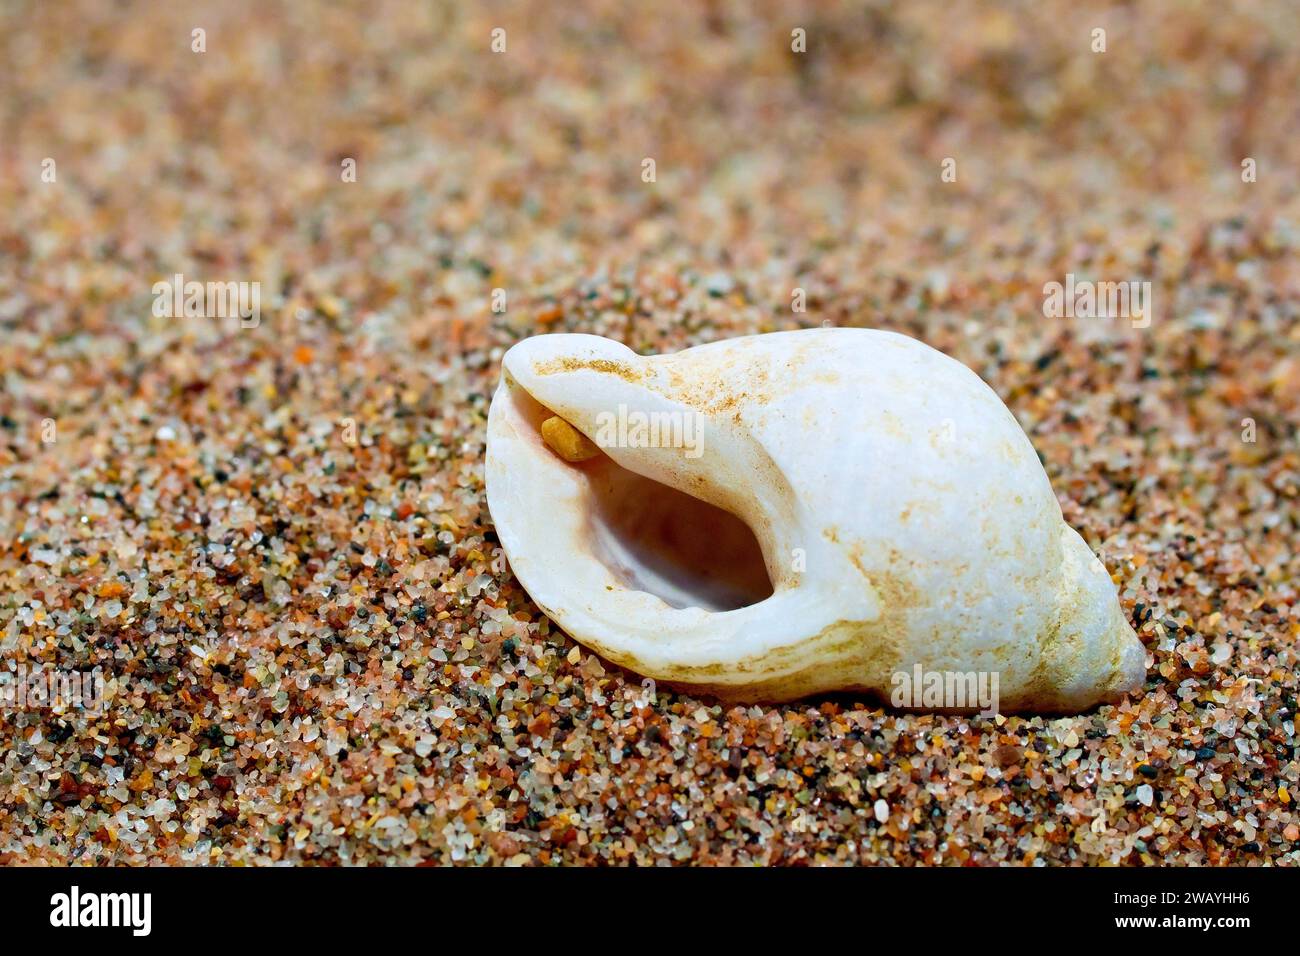 Gros plan d'une coquille blanche de chien Whelk (nucella lapillus) posée sur un tas de sable fin. Banque D'Images